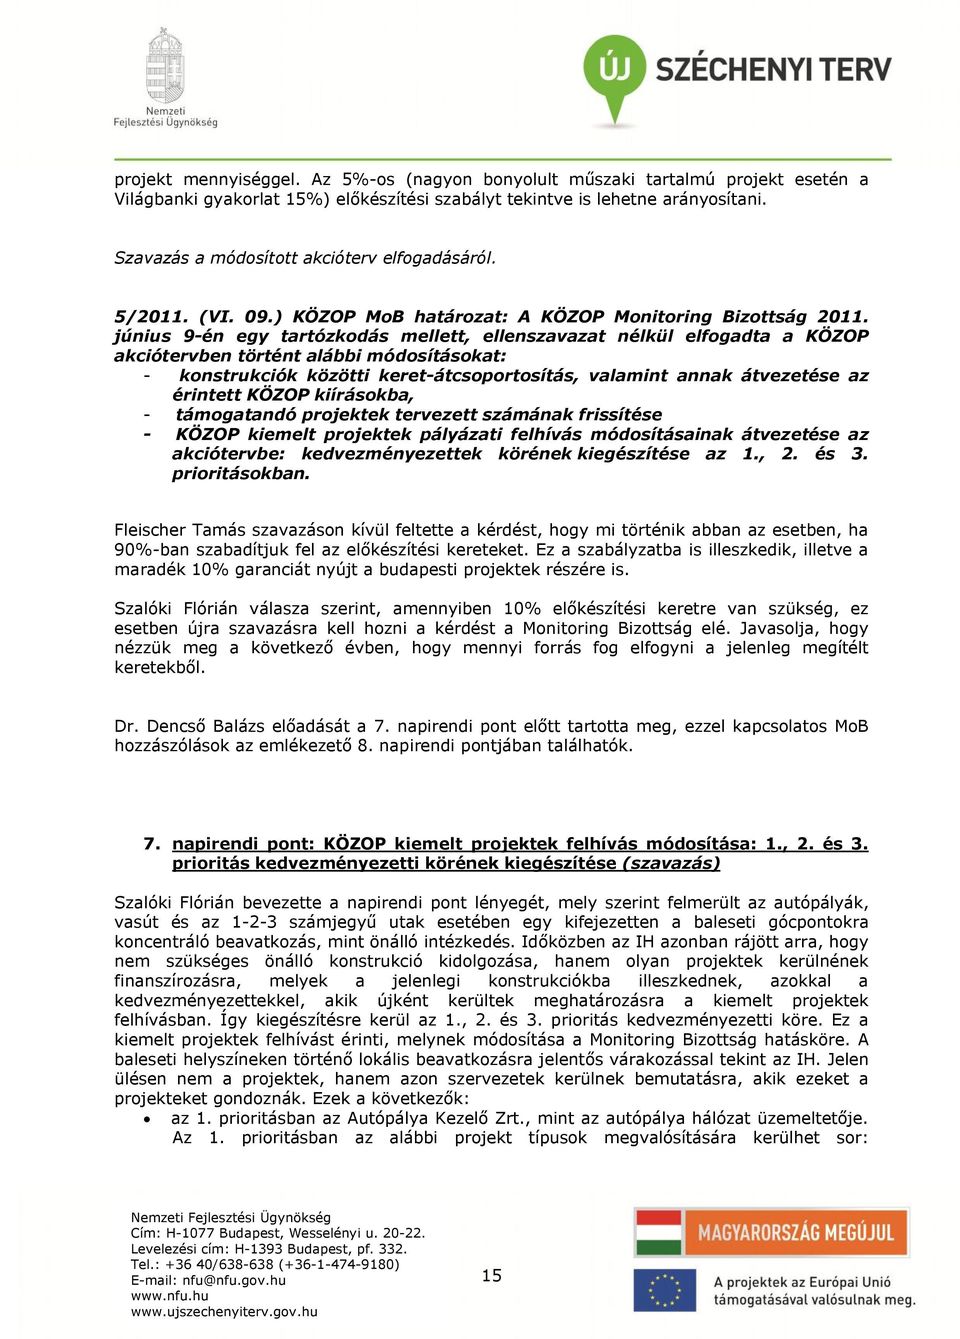 június 9-én egy tartózkodás mellett, ellenszavazat nélkül elfogadta a KÖZOP akciótervben történt alábbi módosításokat: - konstrukciók közötti keret-átcsoportosítás, valamint annak átvezetése az